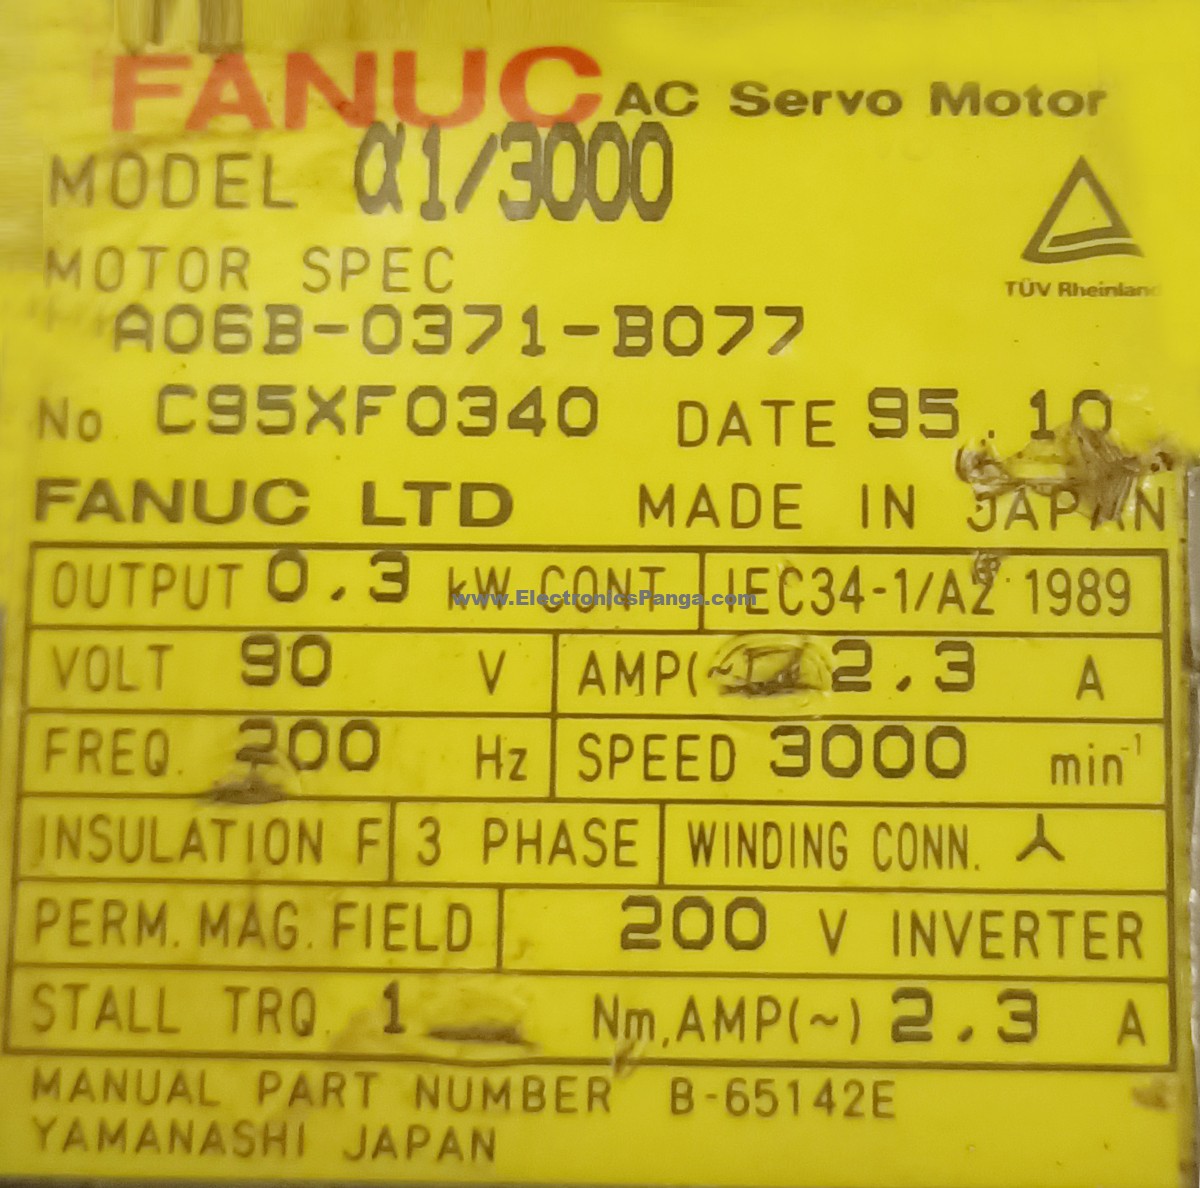 Fanuc A3/3000 AC Servo Motor Supplier,Fanuc A3/3000 AC Servo Motor  Trader,Hyderabad,India